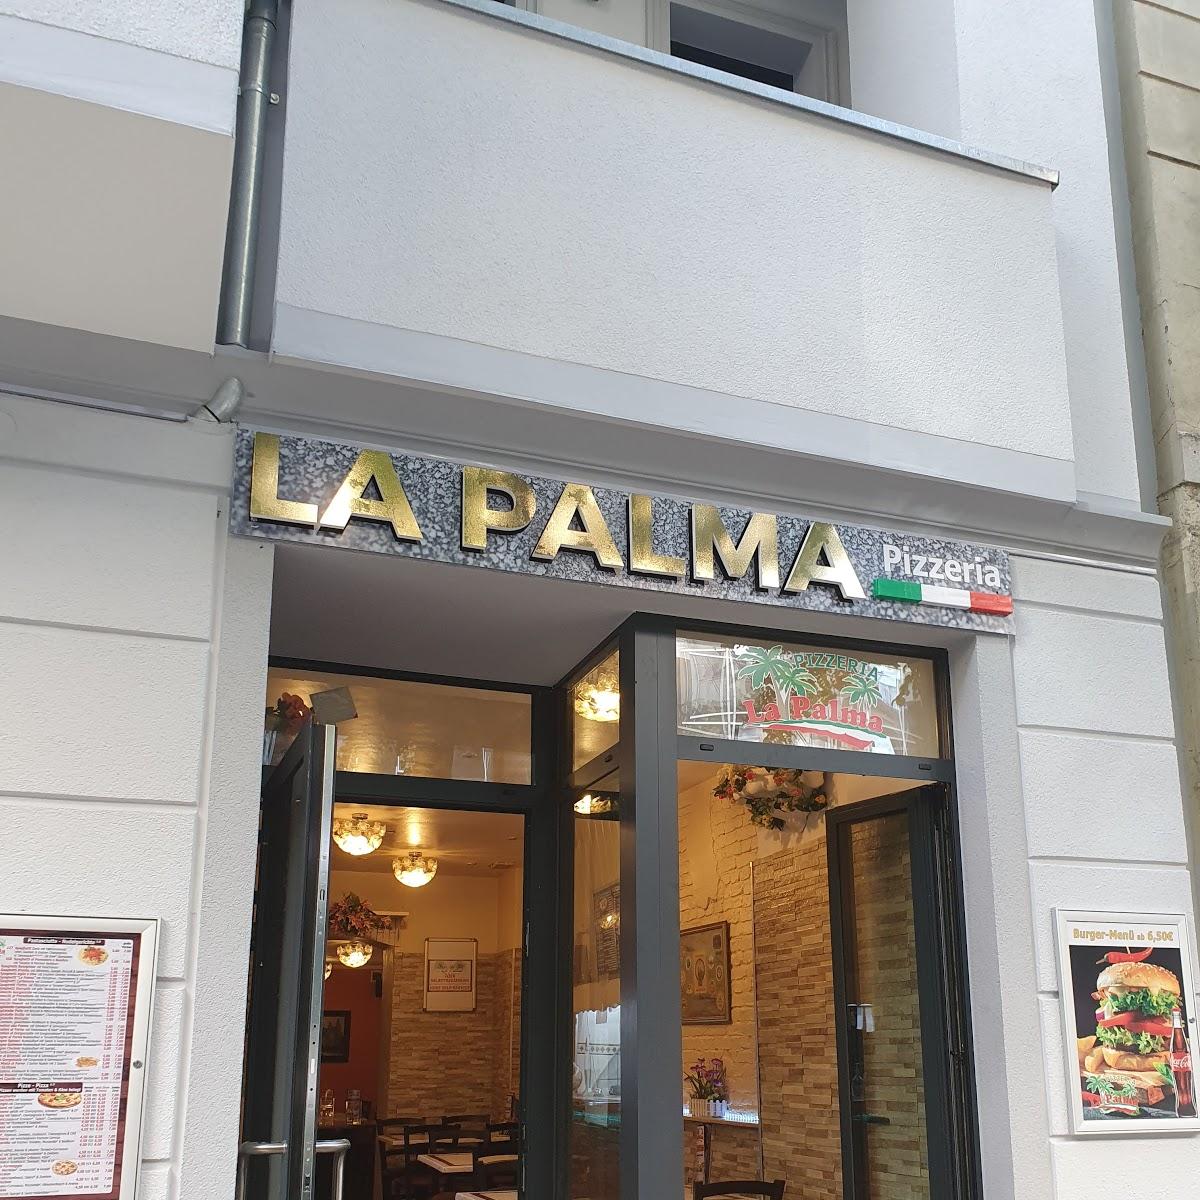 Restaurant "La Palma Pizzeria Berlin" in Berlin